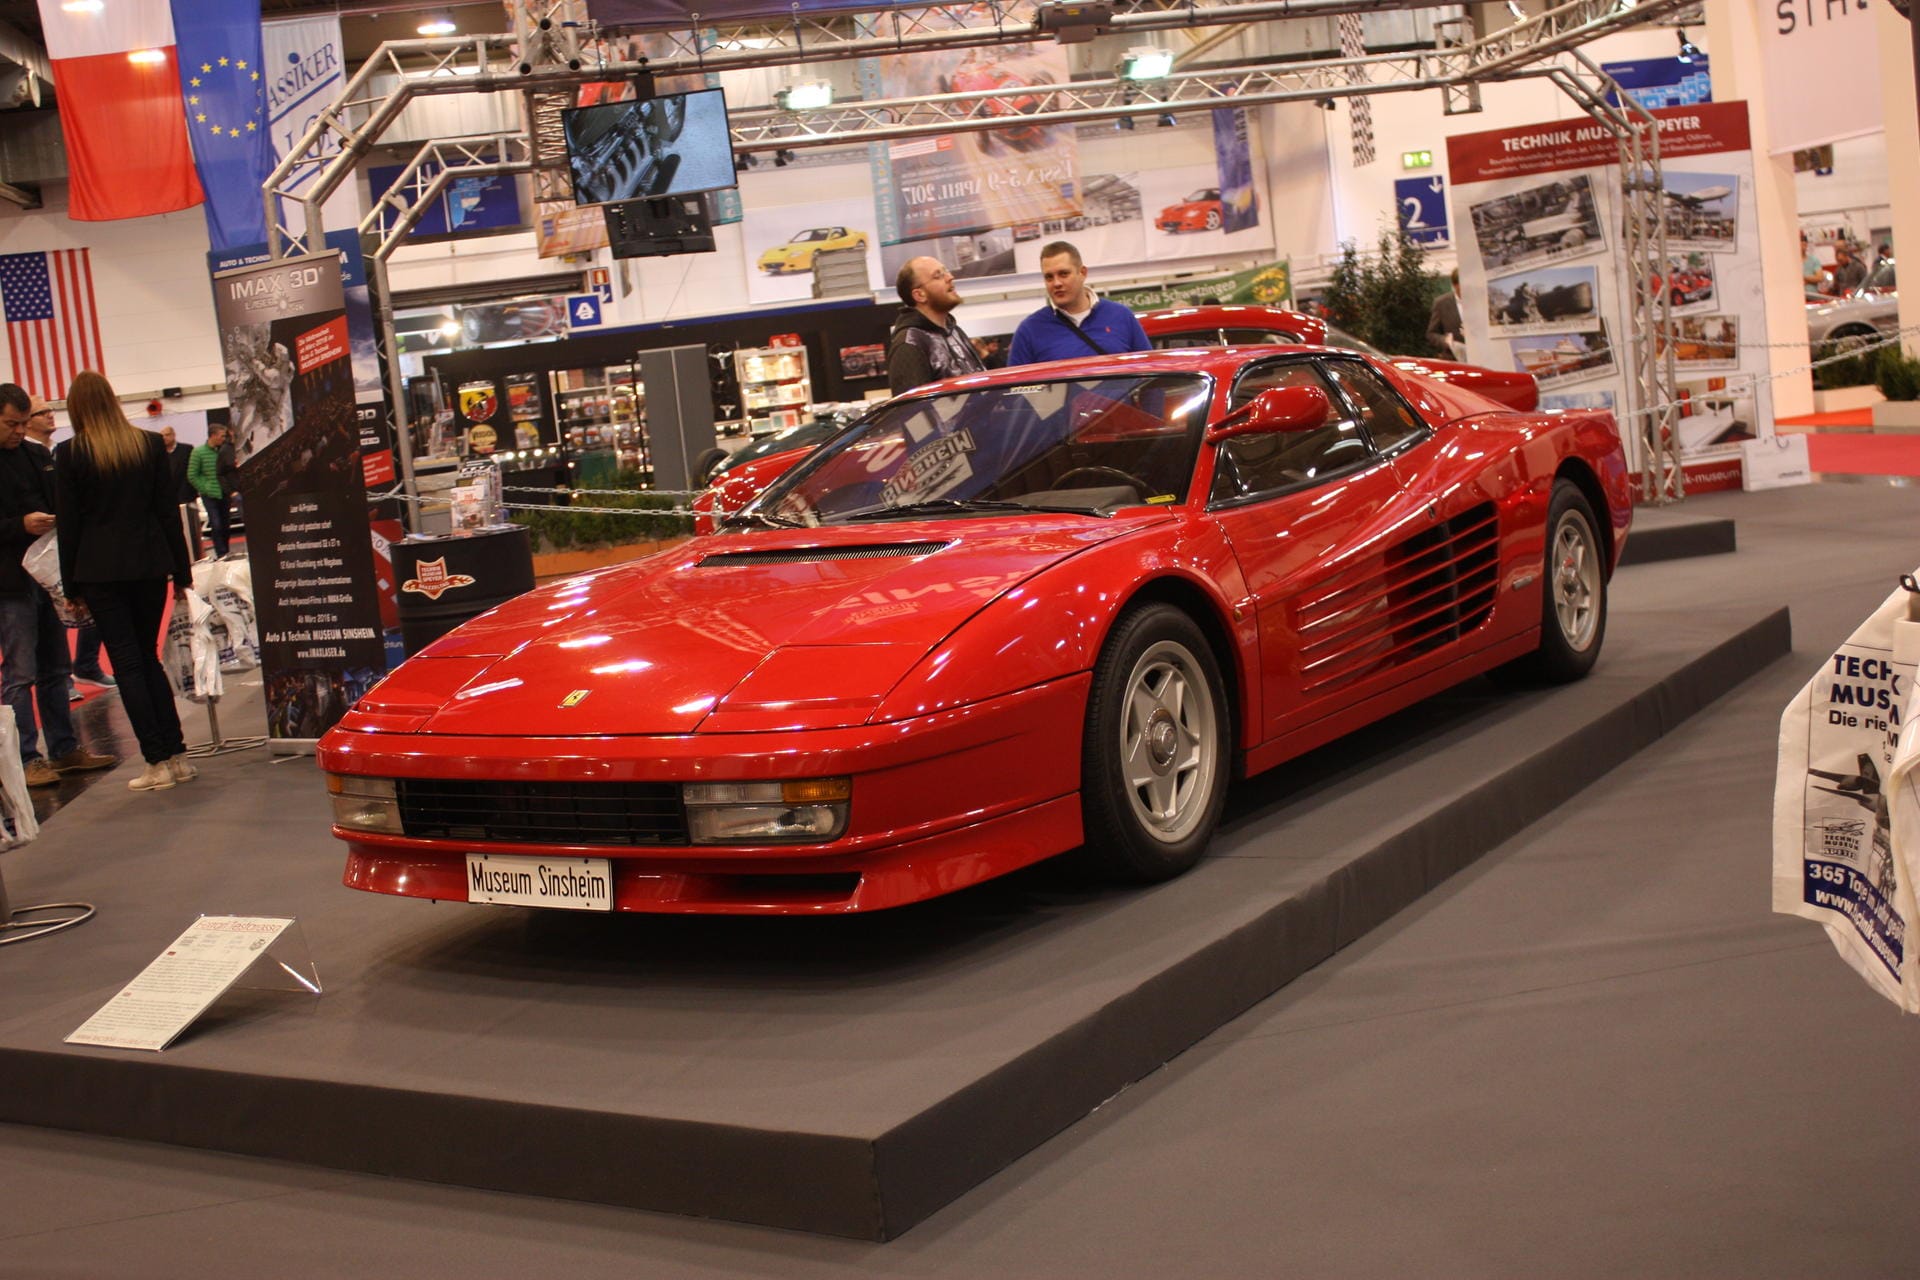 Steht neben der Sonderschau: Ein früher Ferrari Testarossa, erkennbar am weit oben liegenden Außenspiegel.